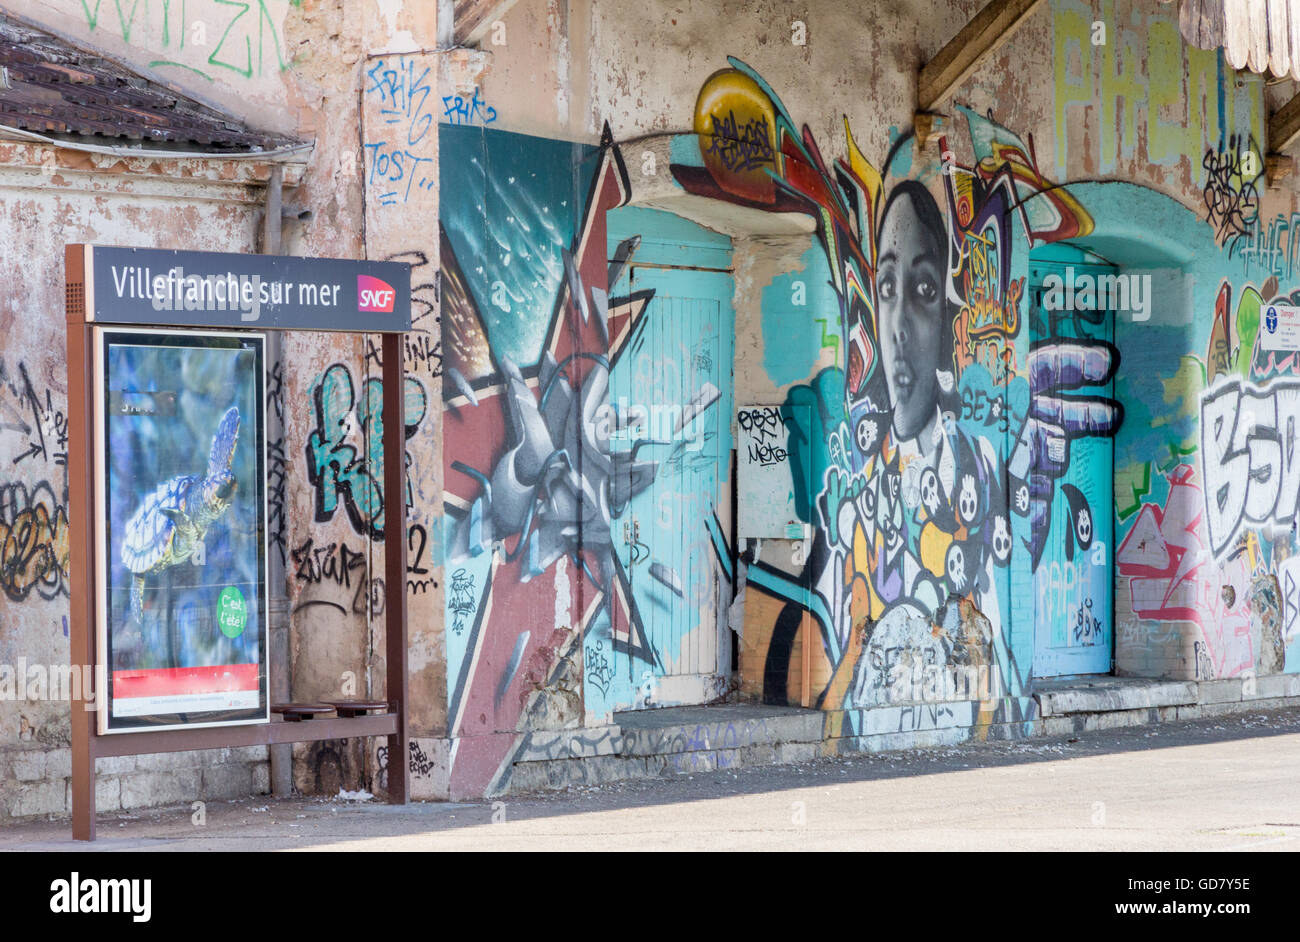 Grafitti auf VIllefranche Sur Mer Station, Frankreich Stockfoto